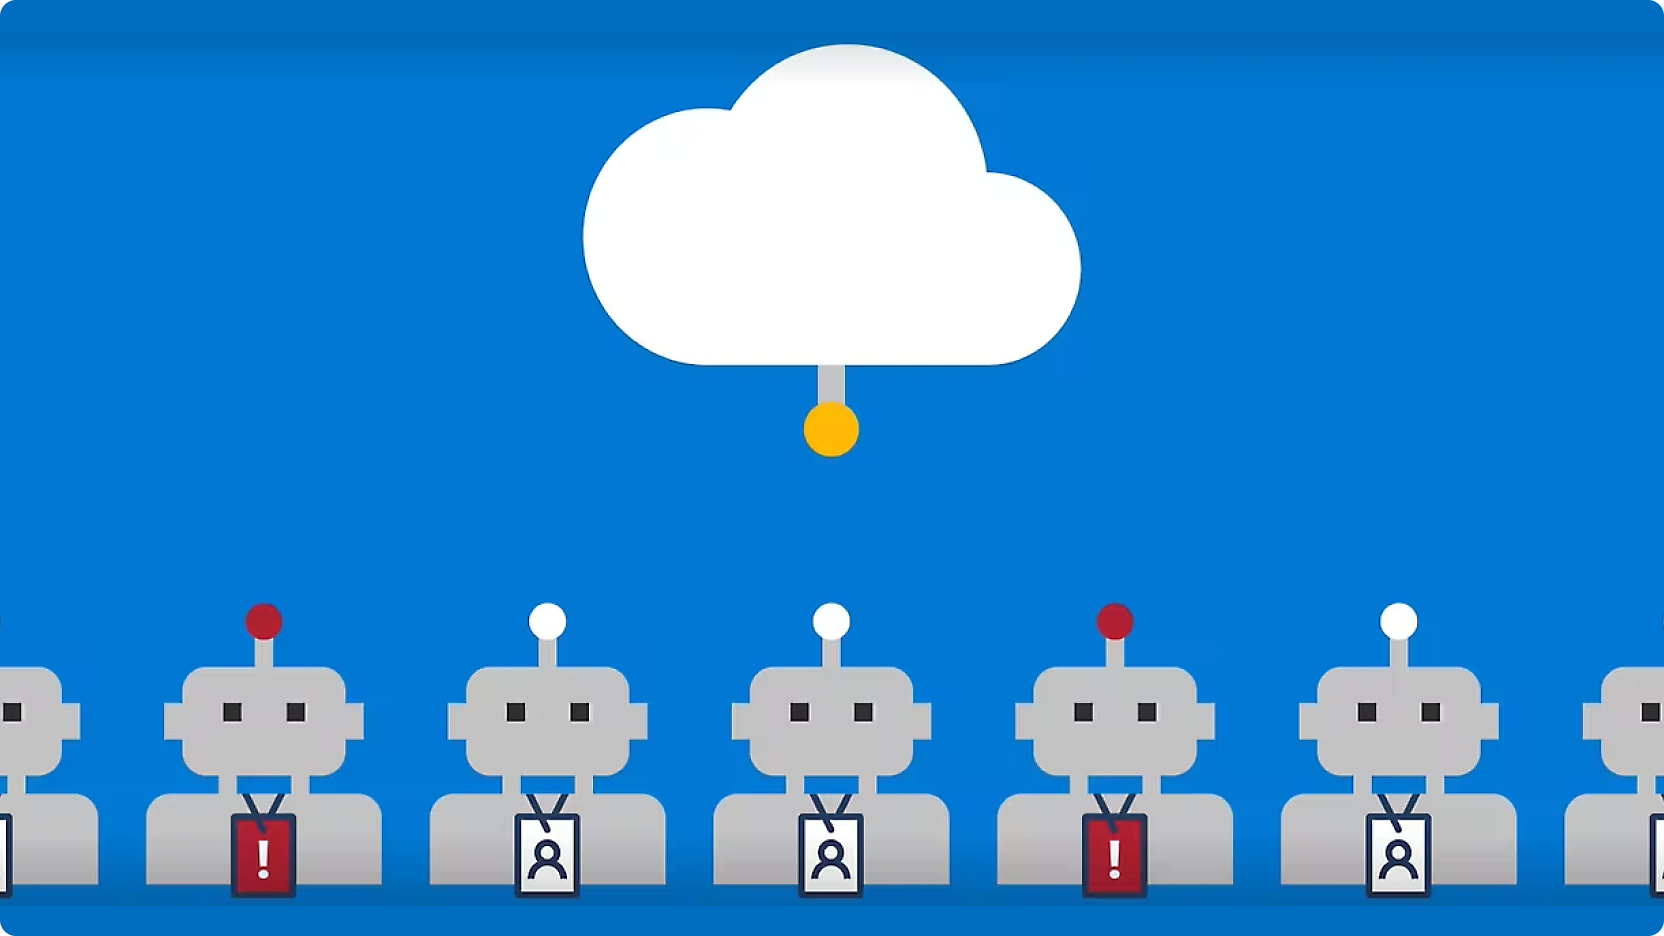 Representação gráfica de filas de robôs com botões vermelhos na cabeça, ligados por linhas a uma nuvem central